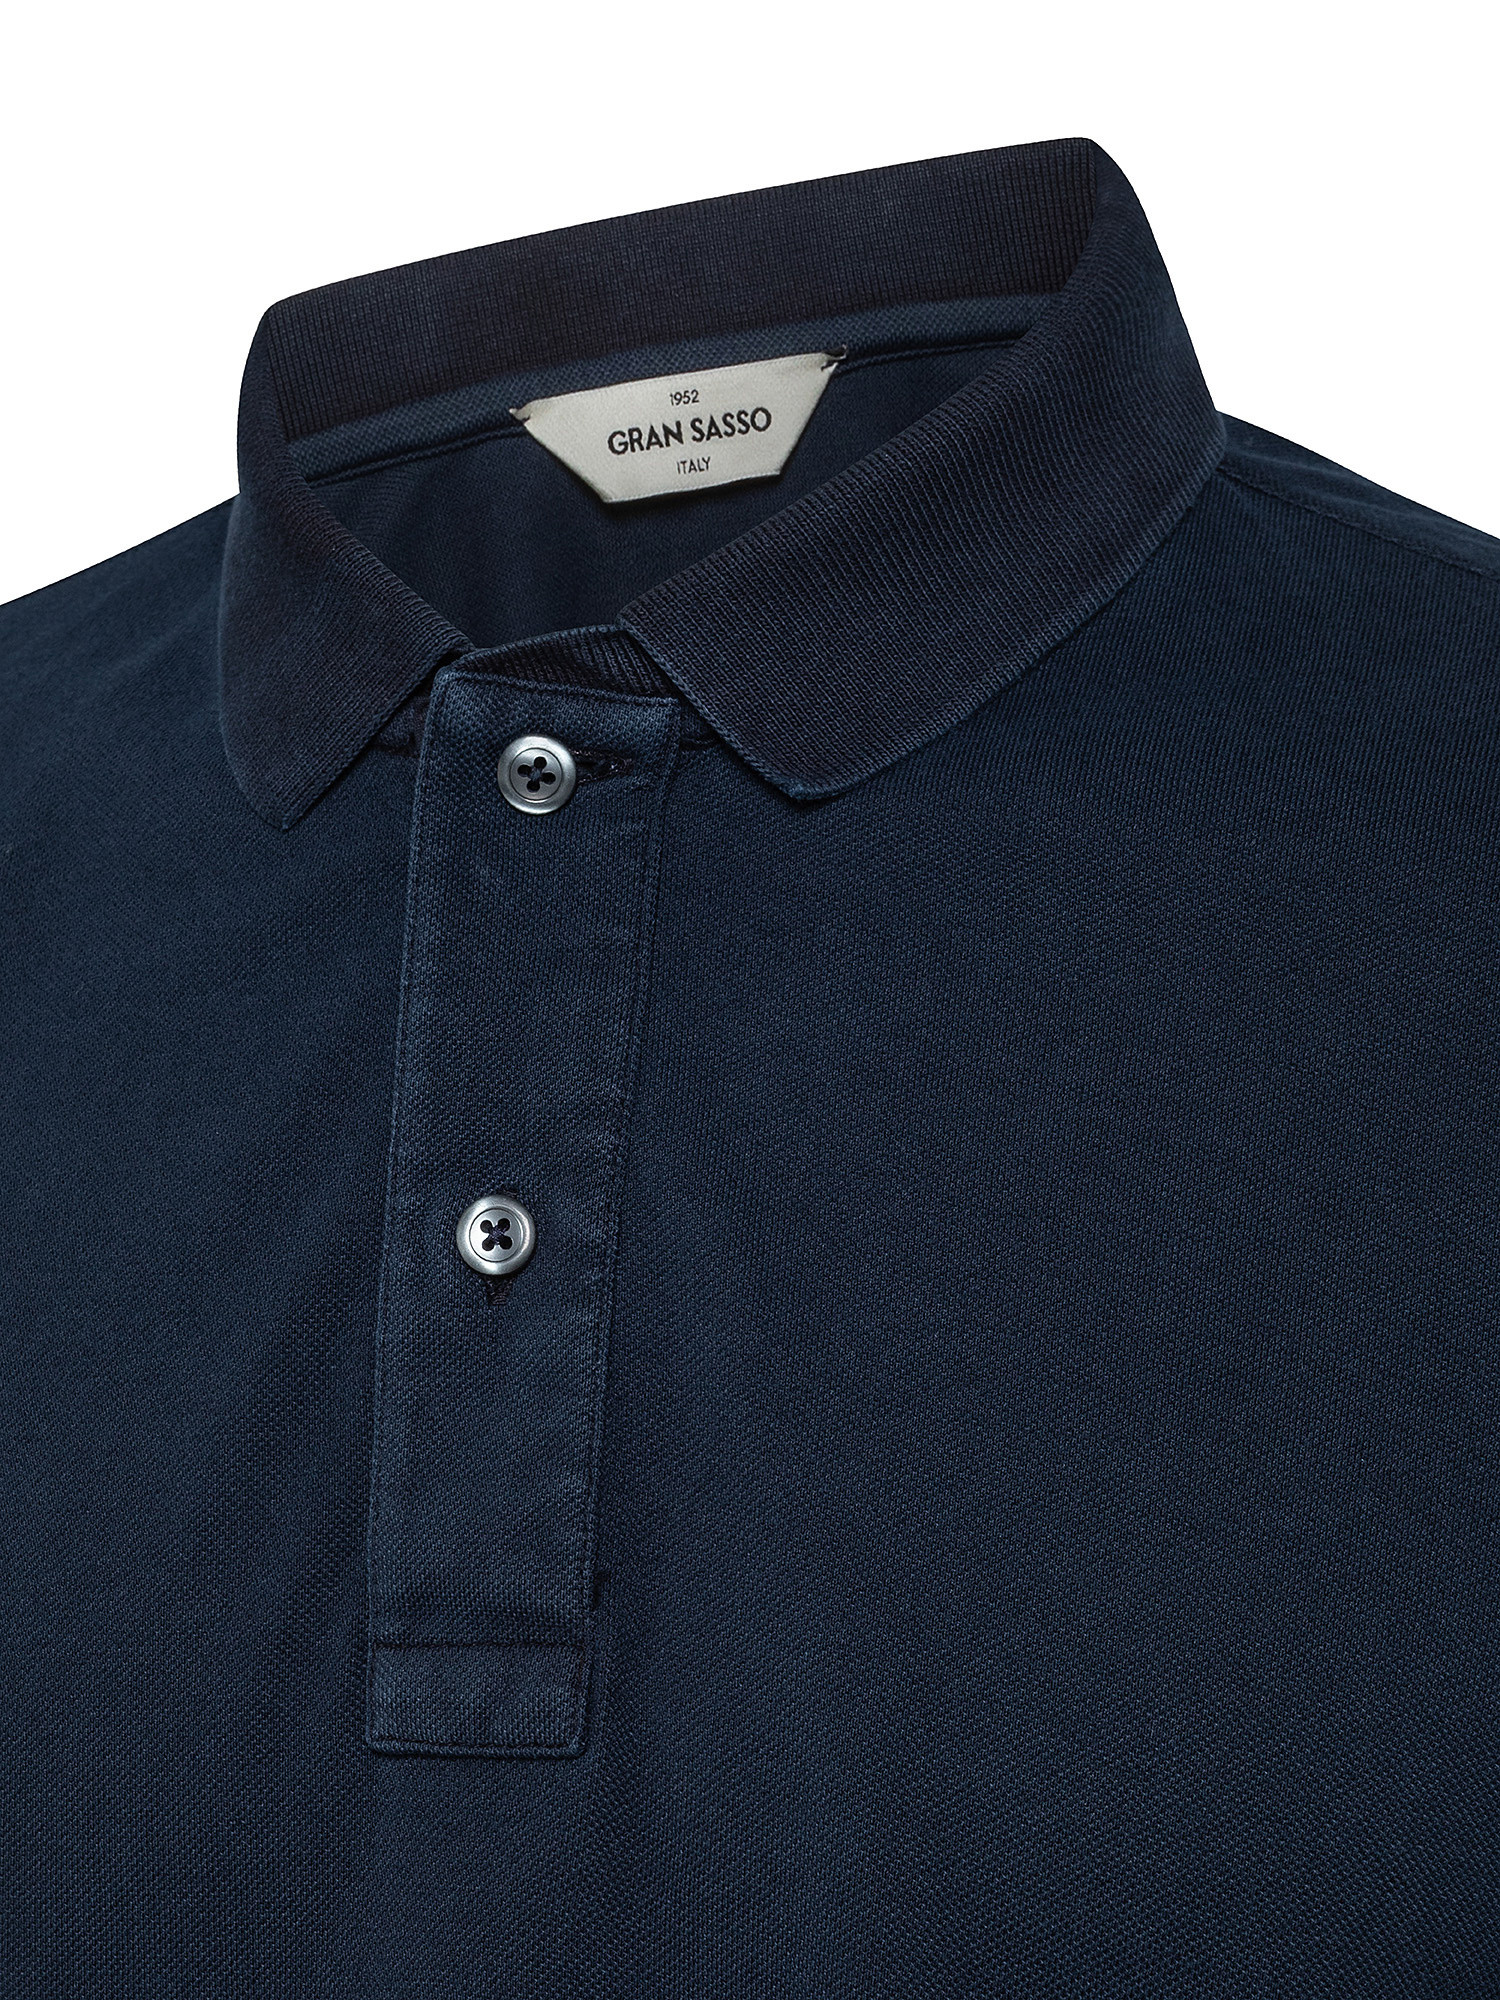 Vintage effect short sleeve polo shirt, Dark Blue, large image number 2